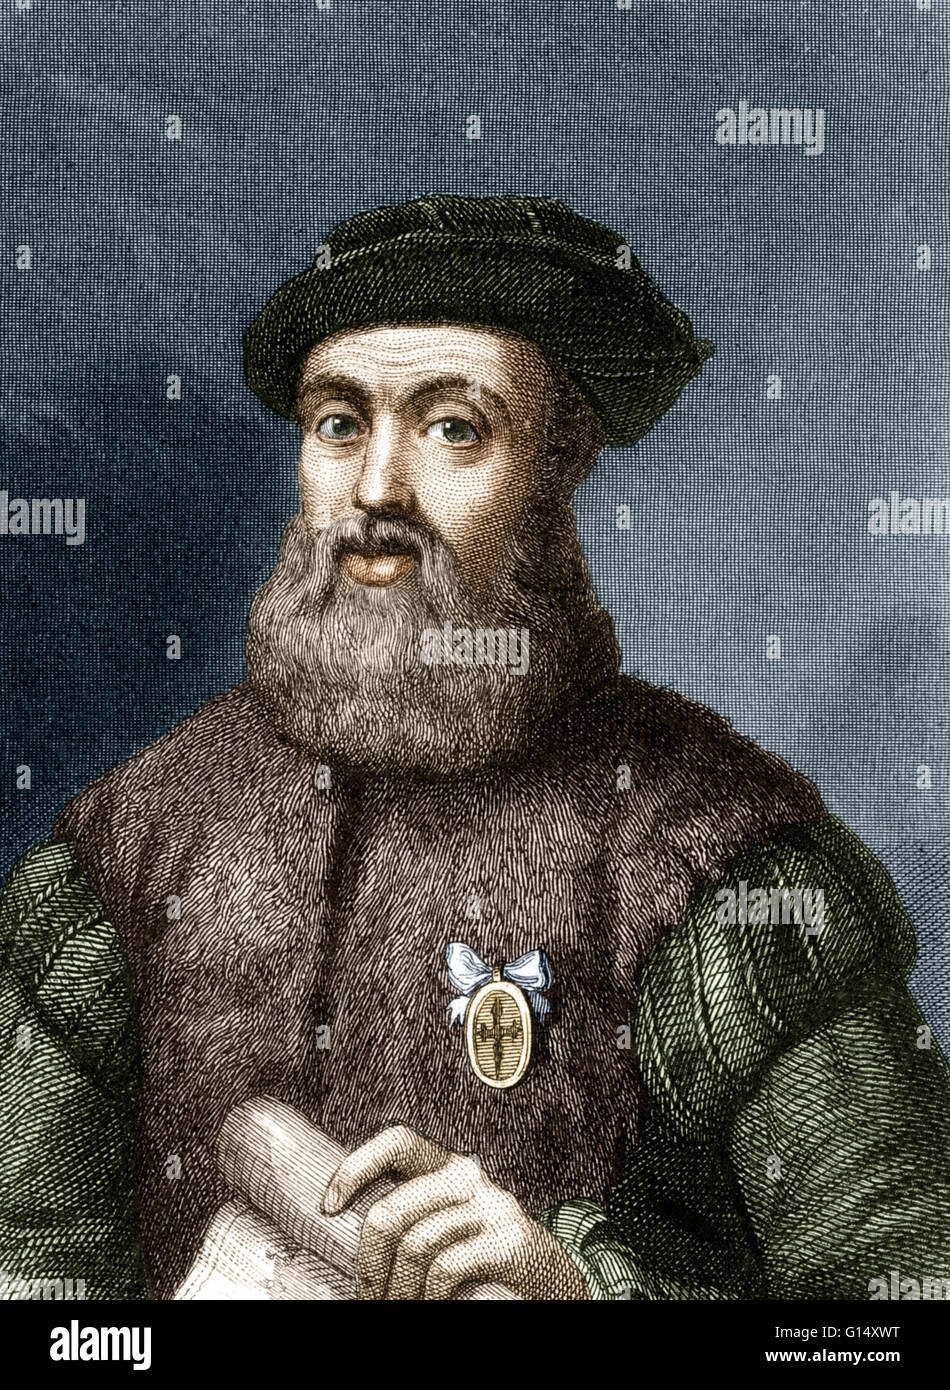 Ferdinand Magellan (1480 - April 27, 1521) was a Portuguese